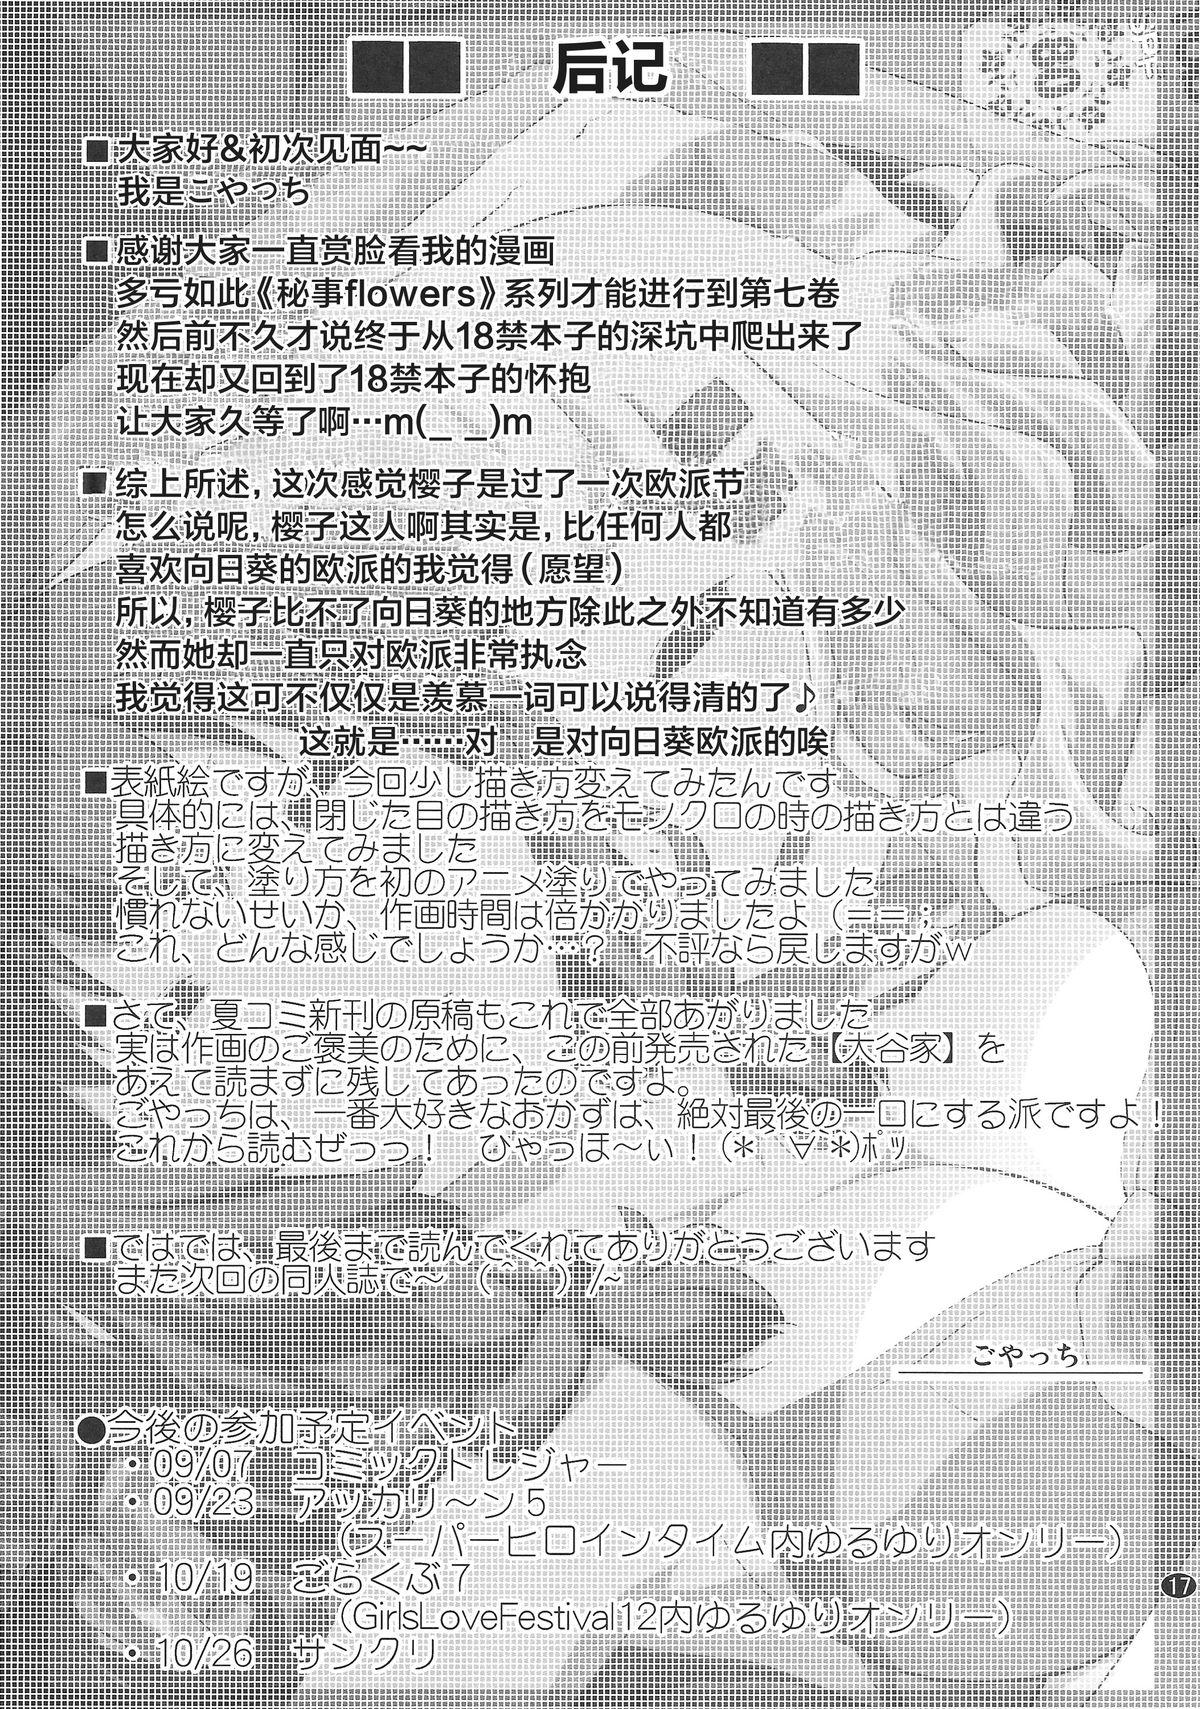 Himegoto Flowers 7 17